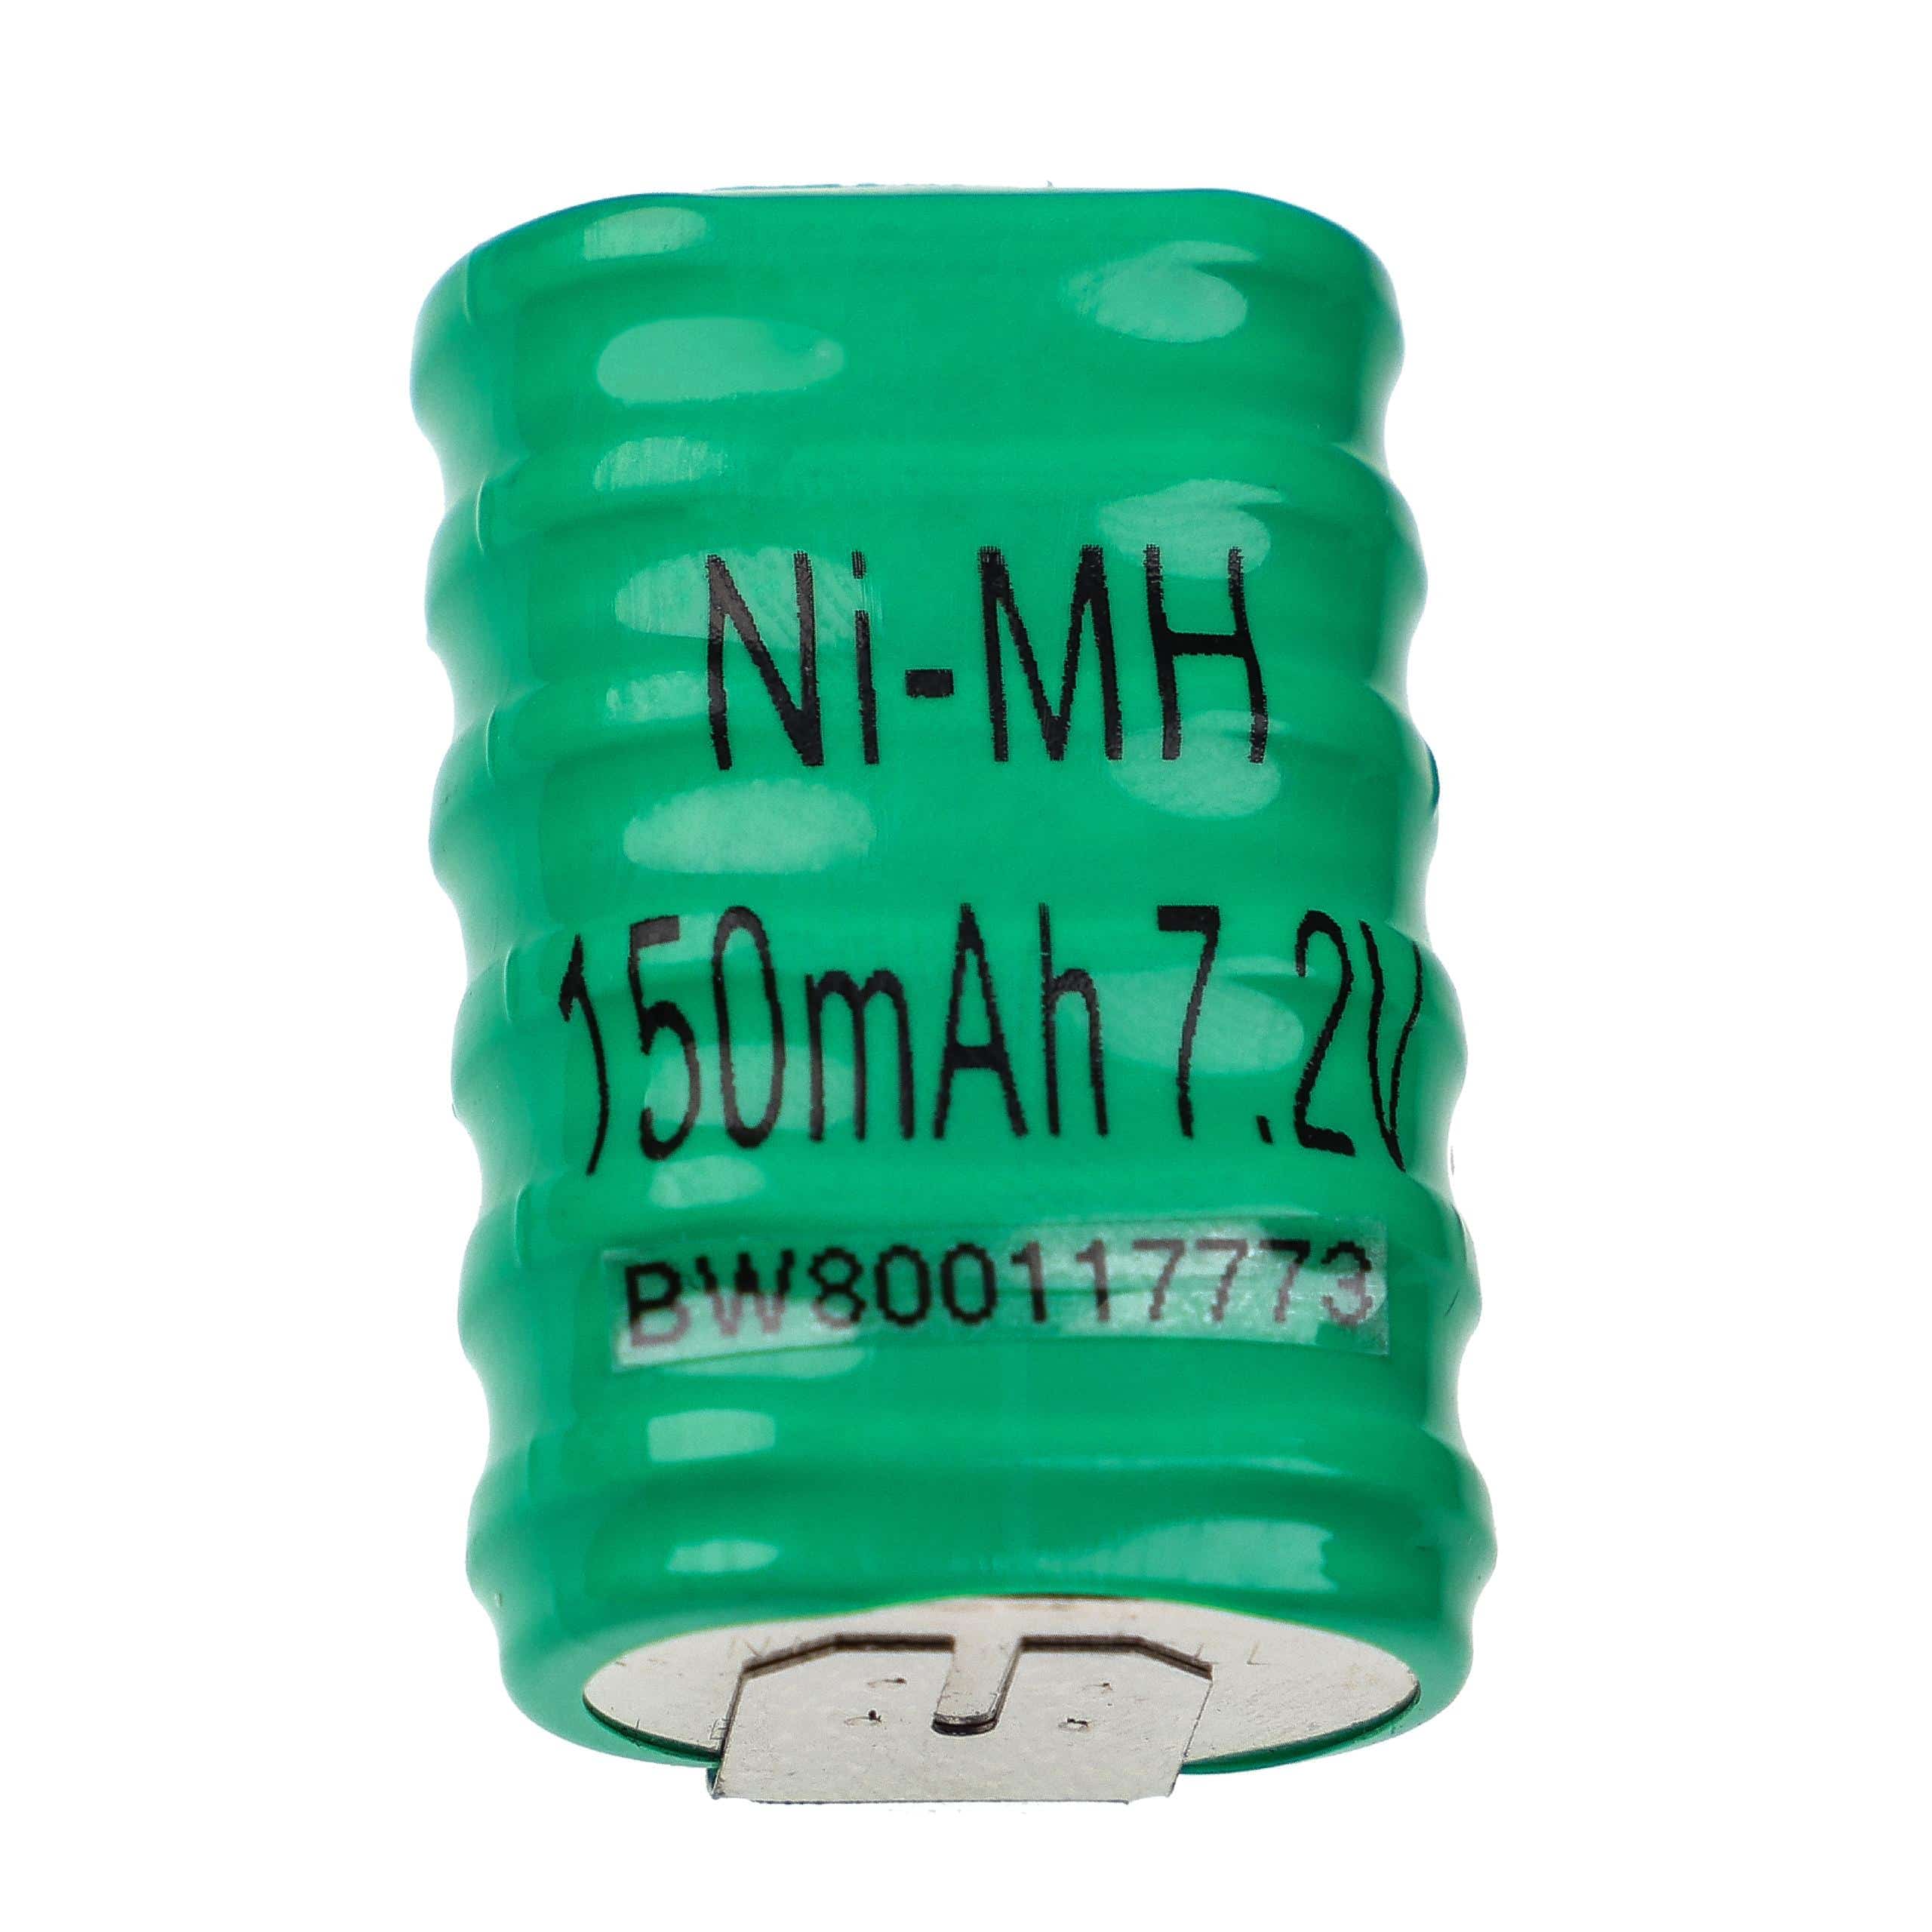 Batteria a bottone (6x cella) tipo 6/V150H 3 pin sostituisce 6/V150H per modellismo, luci solari ecc. 